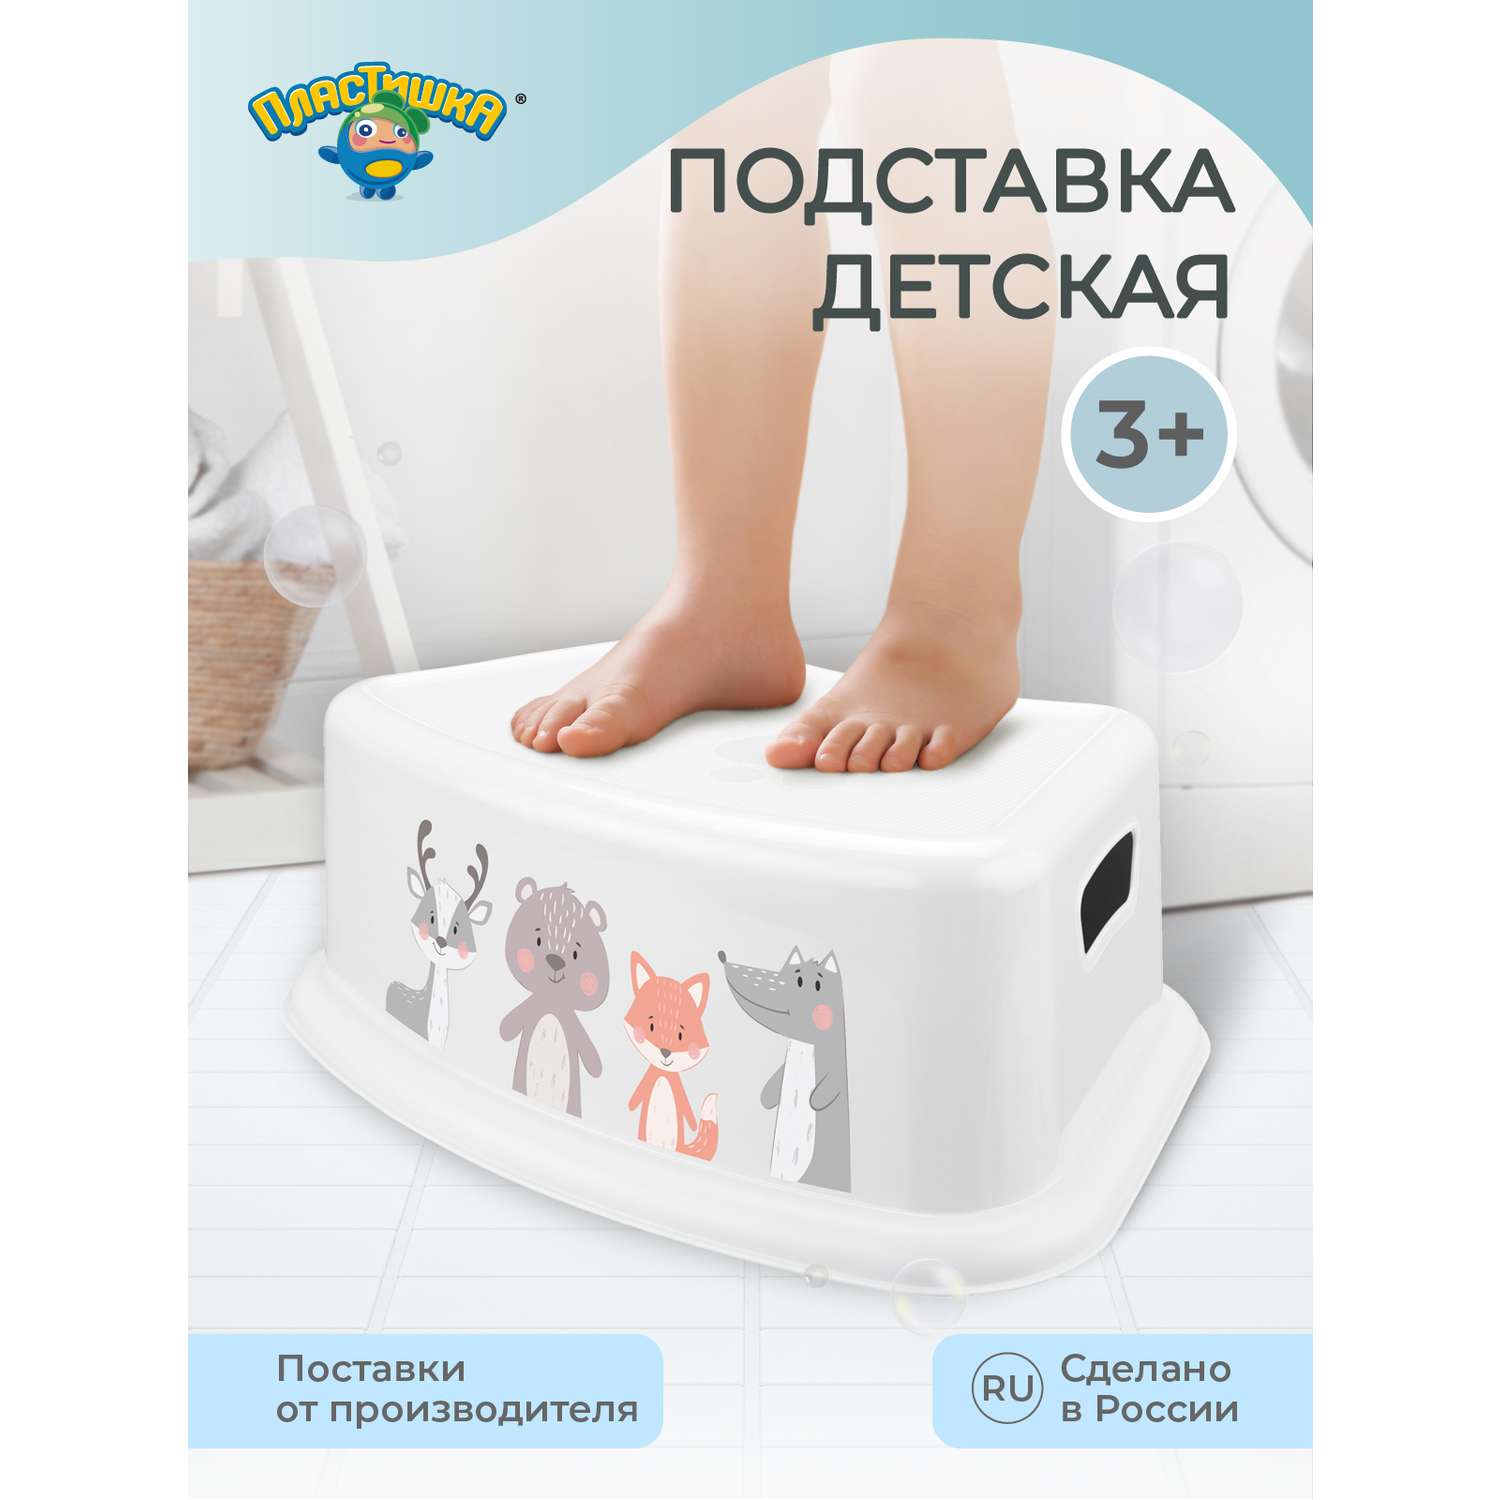 Подставка под ноги Пластишка детская с декором белая - фото 1